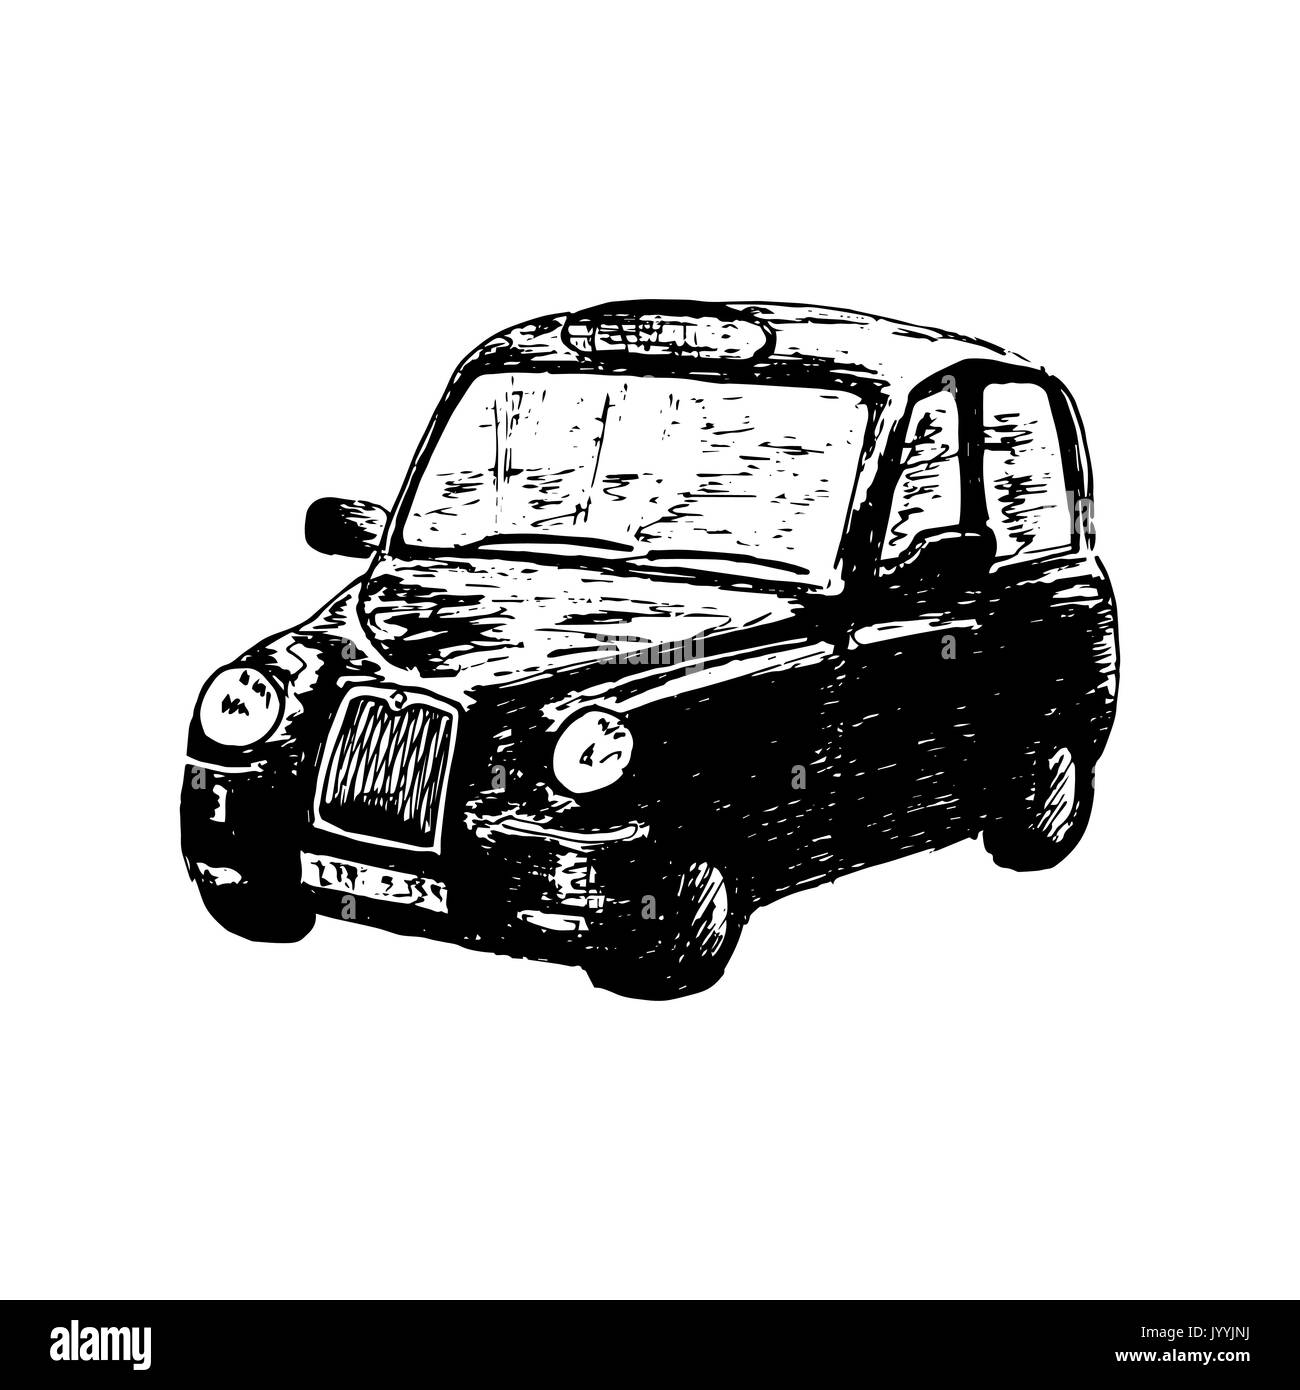 London classic nero con taxi, isolata, disegnata disegno vettoriale illustrazione. vista laterale. retrò carrello di Hackney Illustrazione Vettoriale